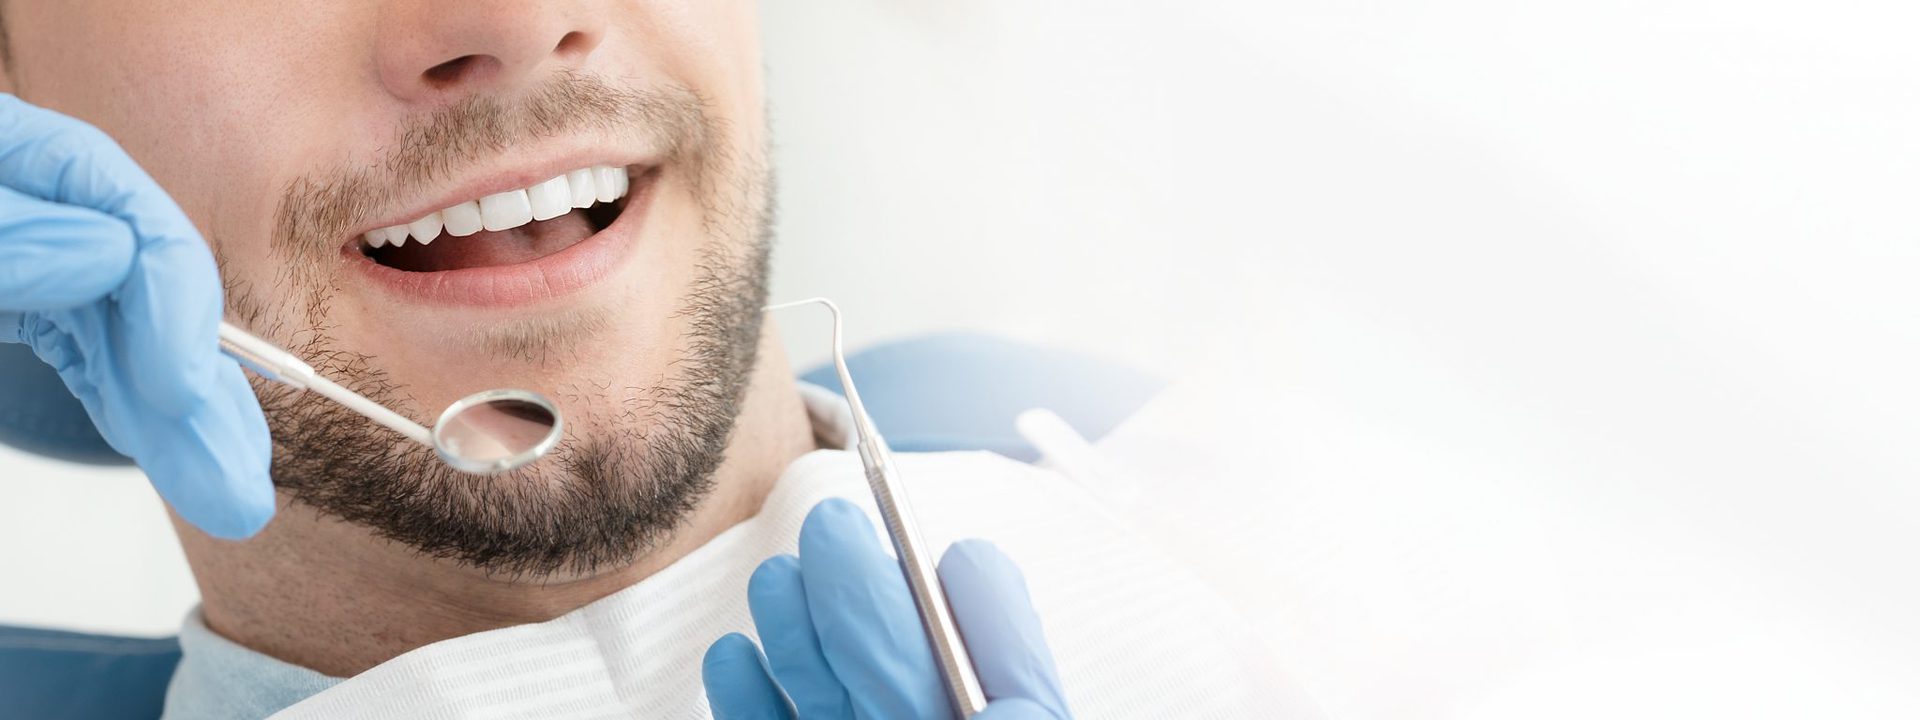 Lächeln eines Patienten nach dem Bleaching / professionelle Zahnaufhellung